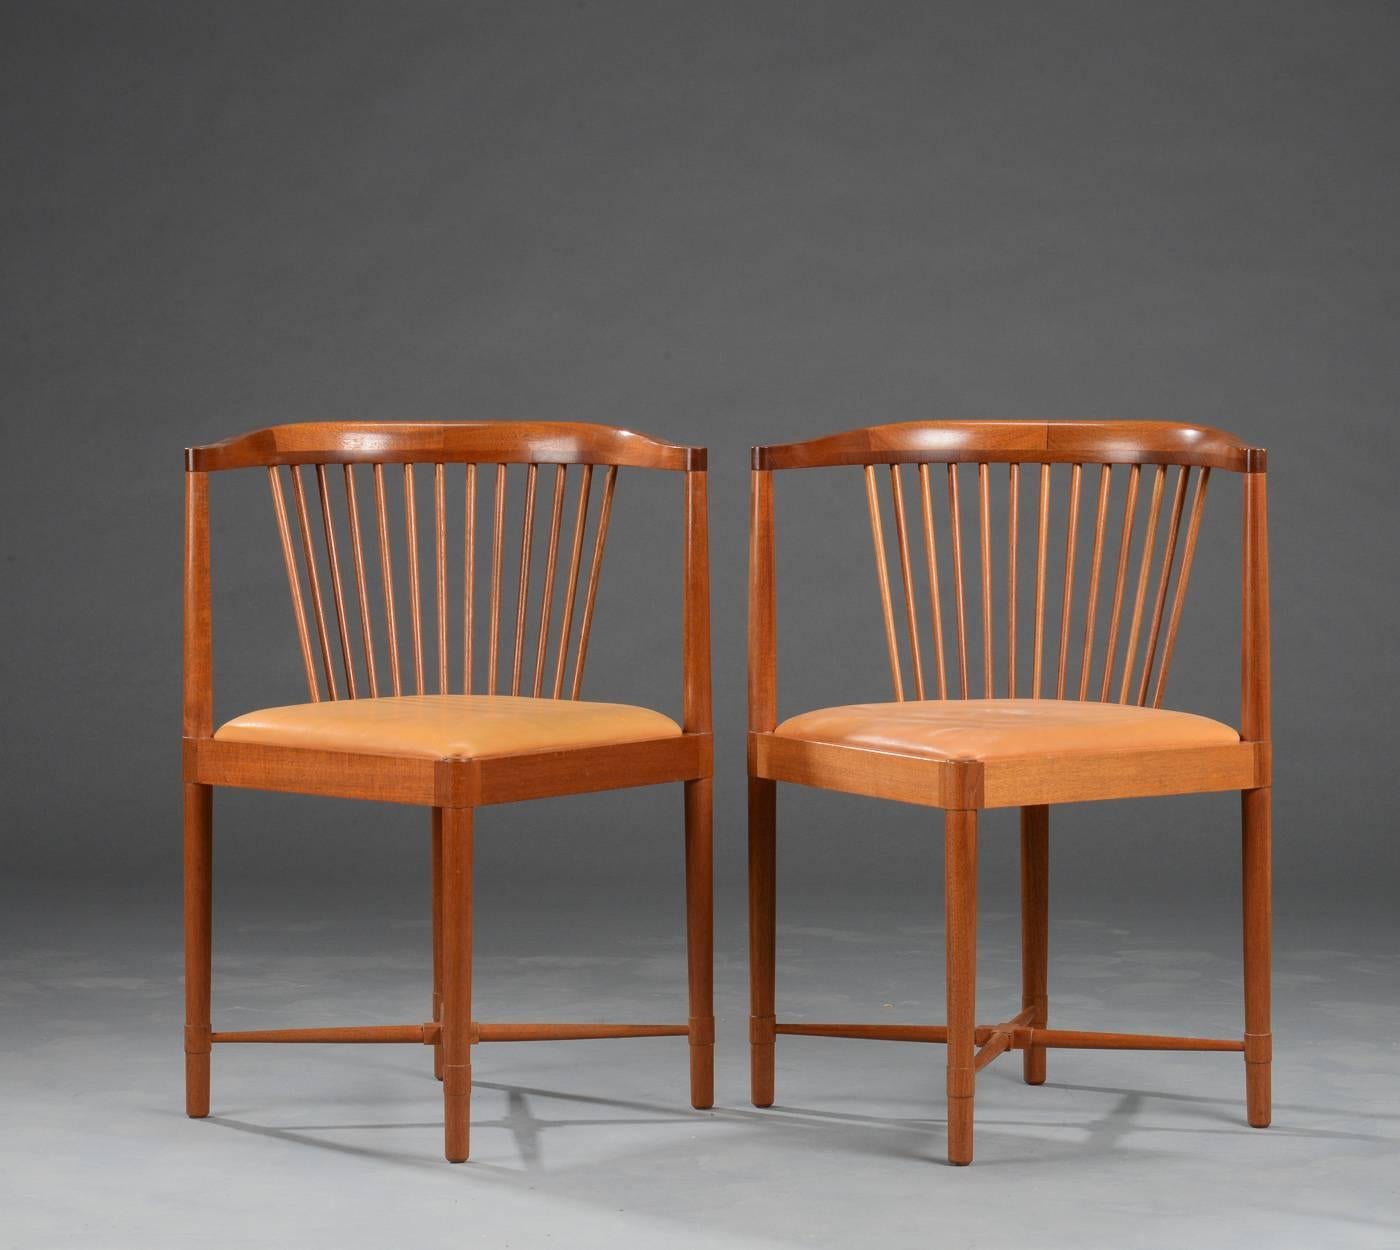 Paire de chaises King of diamonds en acajou et cuir beige conçues par Børge Mogensen pour Søborg Møbelfabrik en 1944.

Les chaises ont un design élégant, elles sont très légères et bien travaillées par les ébénistes, avec de nombreux détails qui